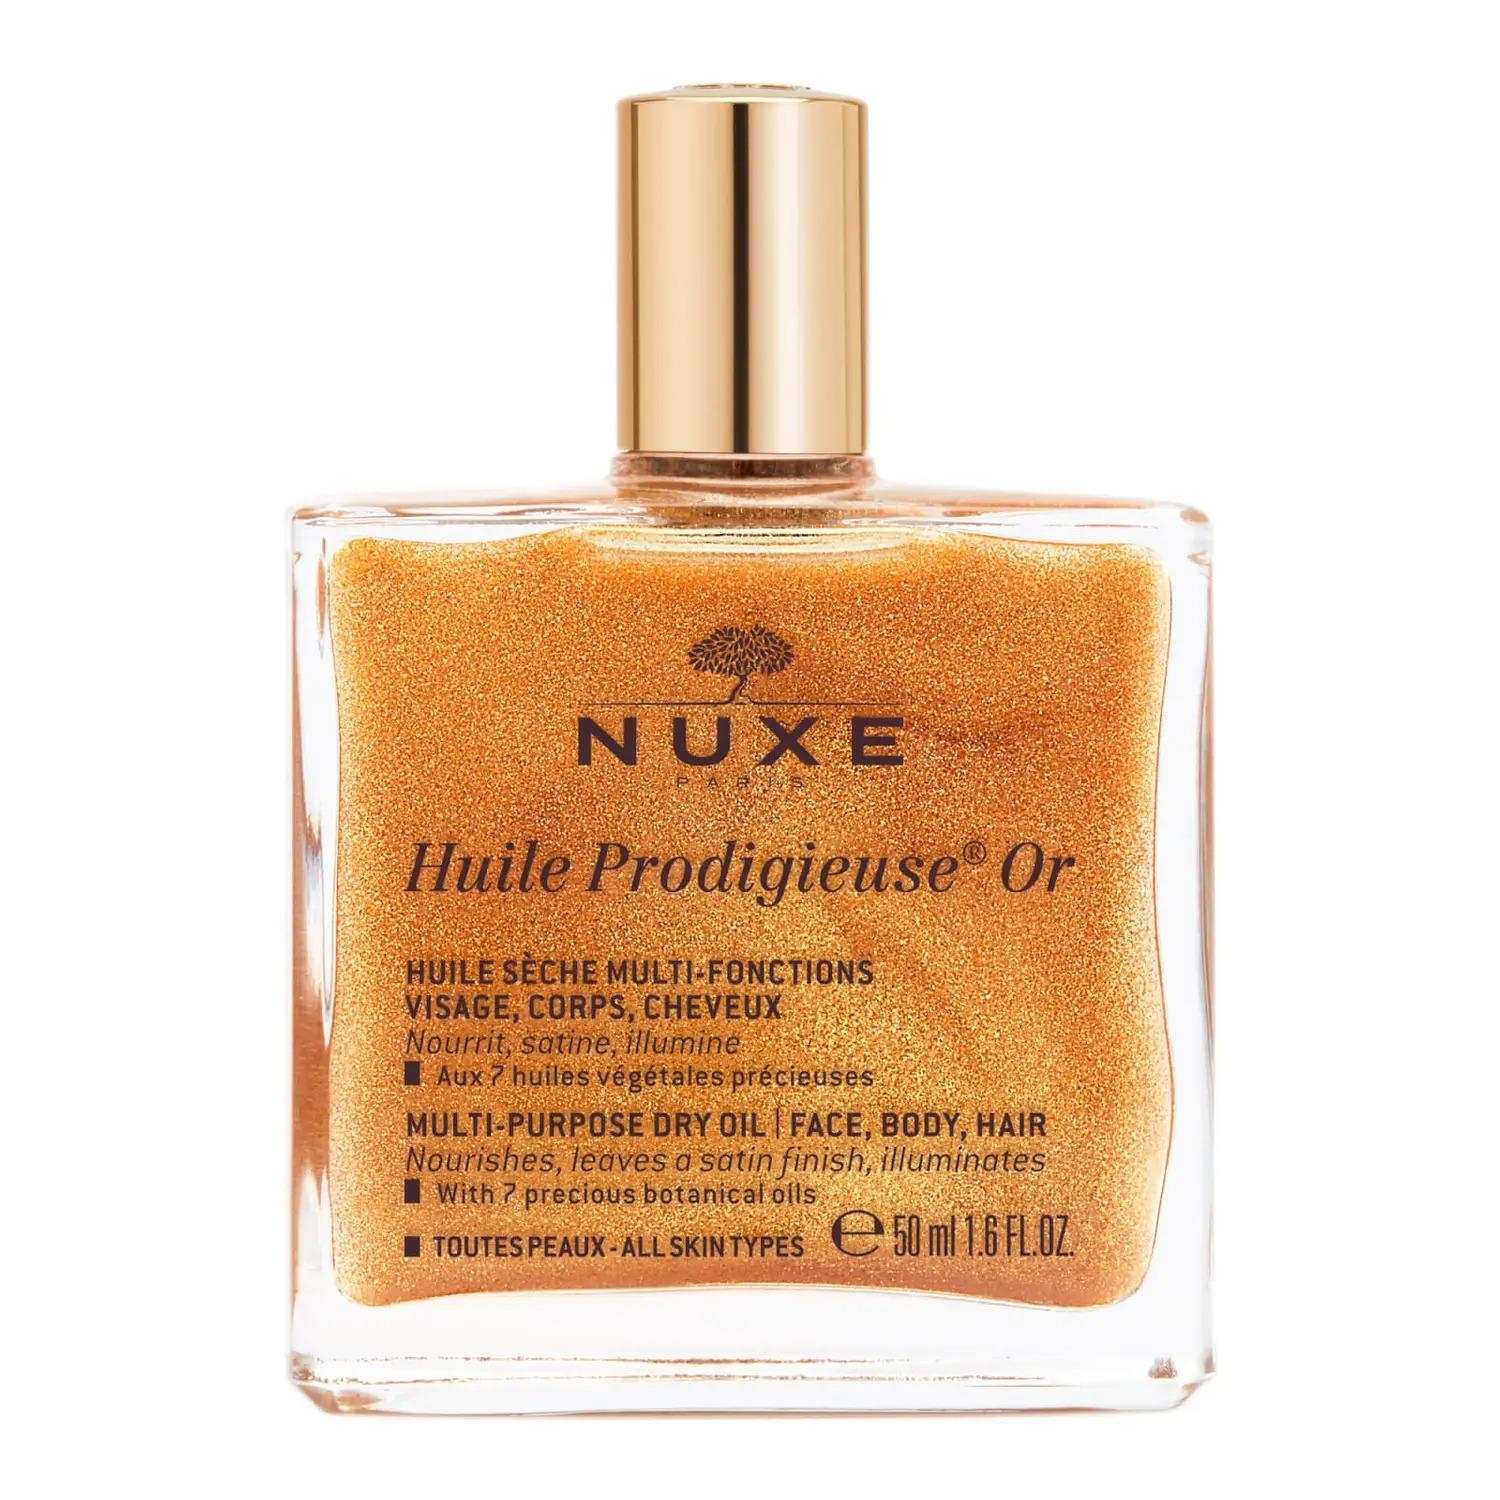 Nuxe Huile Prodigieuse или многофункциональное сухое масло 50 мл nuxe масло huile prodigieuse florale цветочное сухое 50 мл